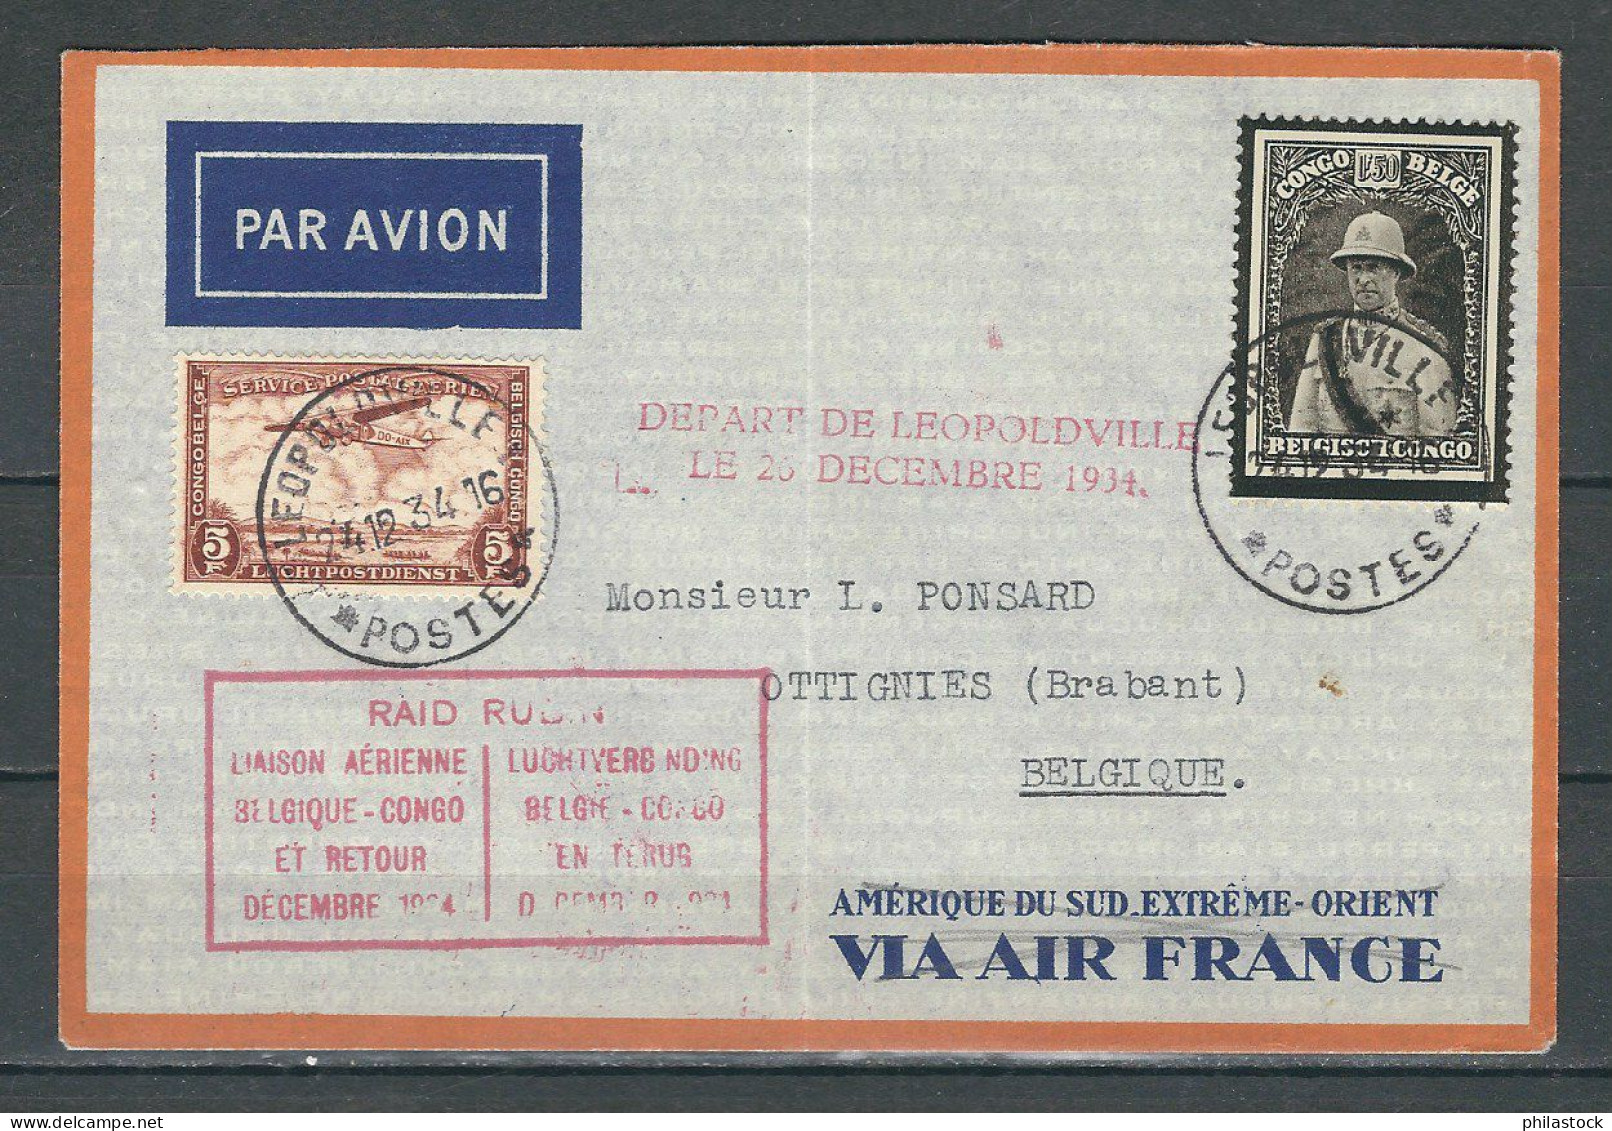 CONGO BELGE 26/12/1934 Raid Par Rubin Belgique /Congo Et Retour Sur Enveloppe - Covers & Documents